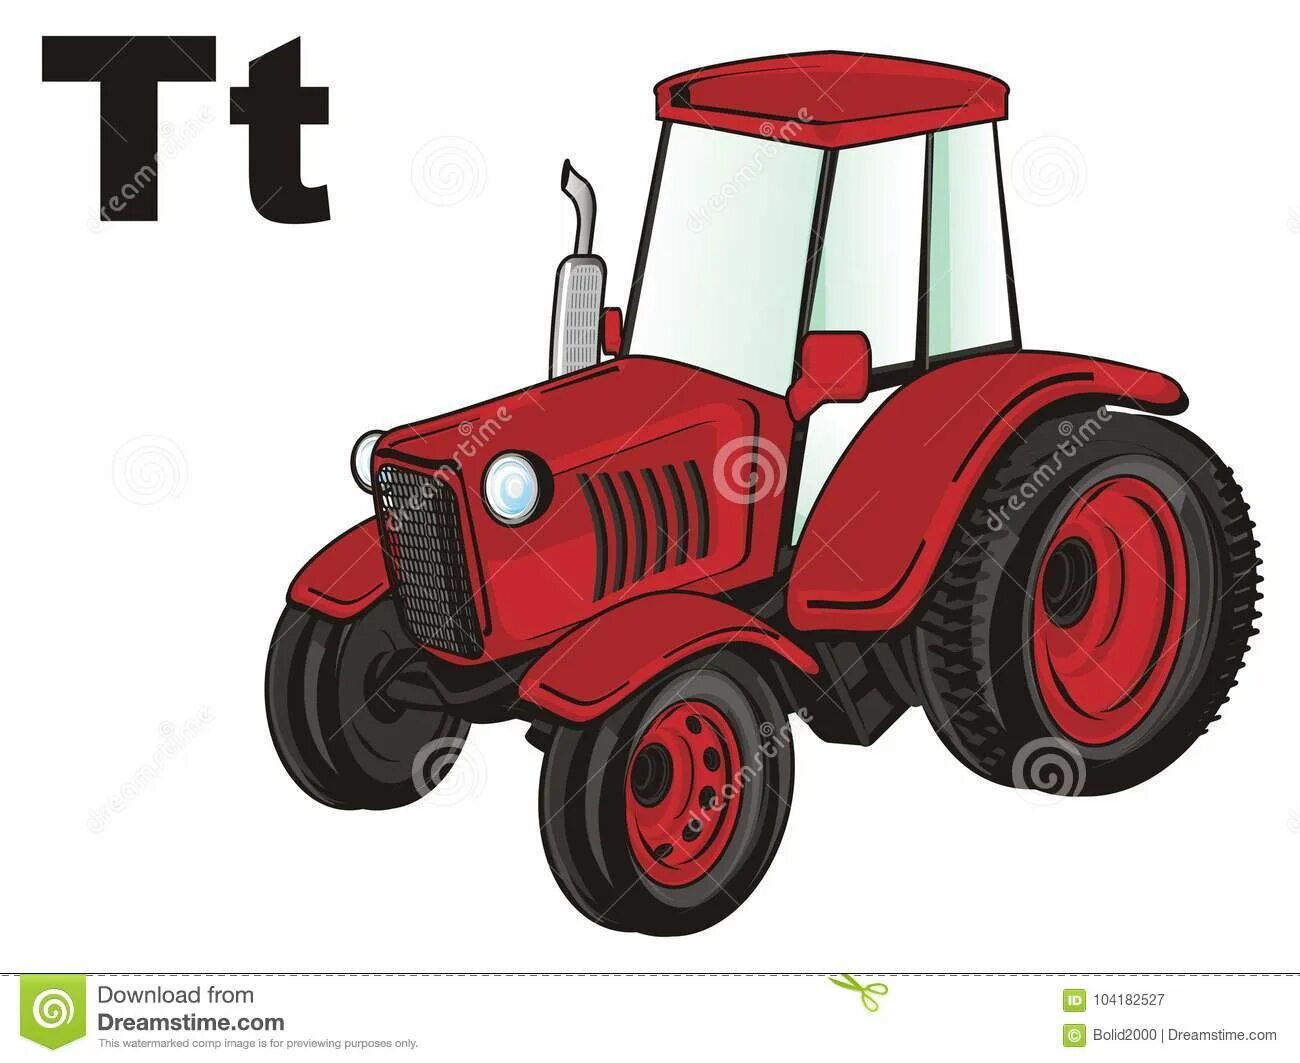 Включи красный трактор. Красный трактор. Красный трактор на белом фоне. Красный трактор для детей. Красный трактор на распечатку.